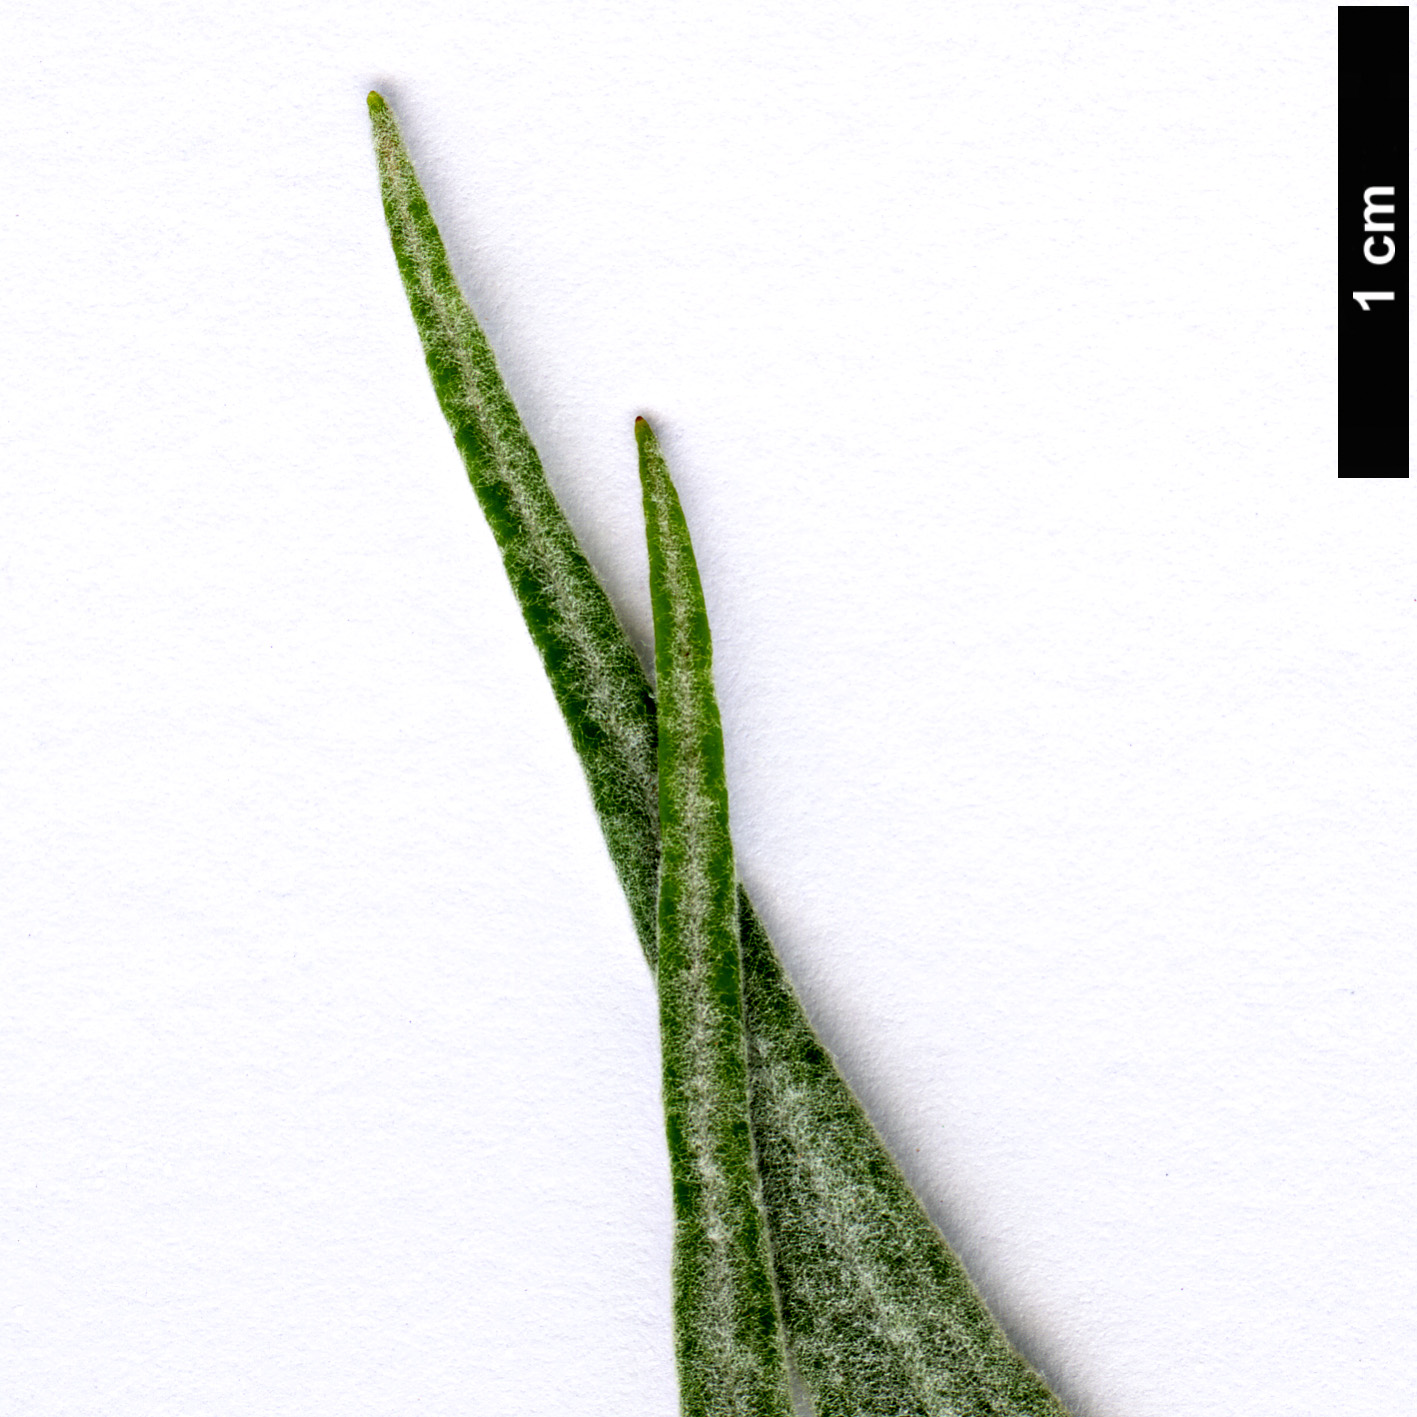 High resolution image: Family: Scrophulariaceae - Genus: Buddleja - Taxon: longiflora